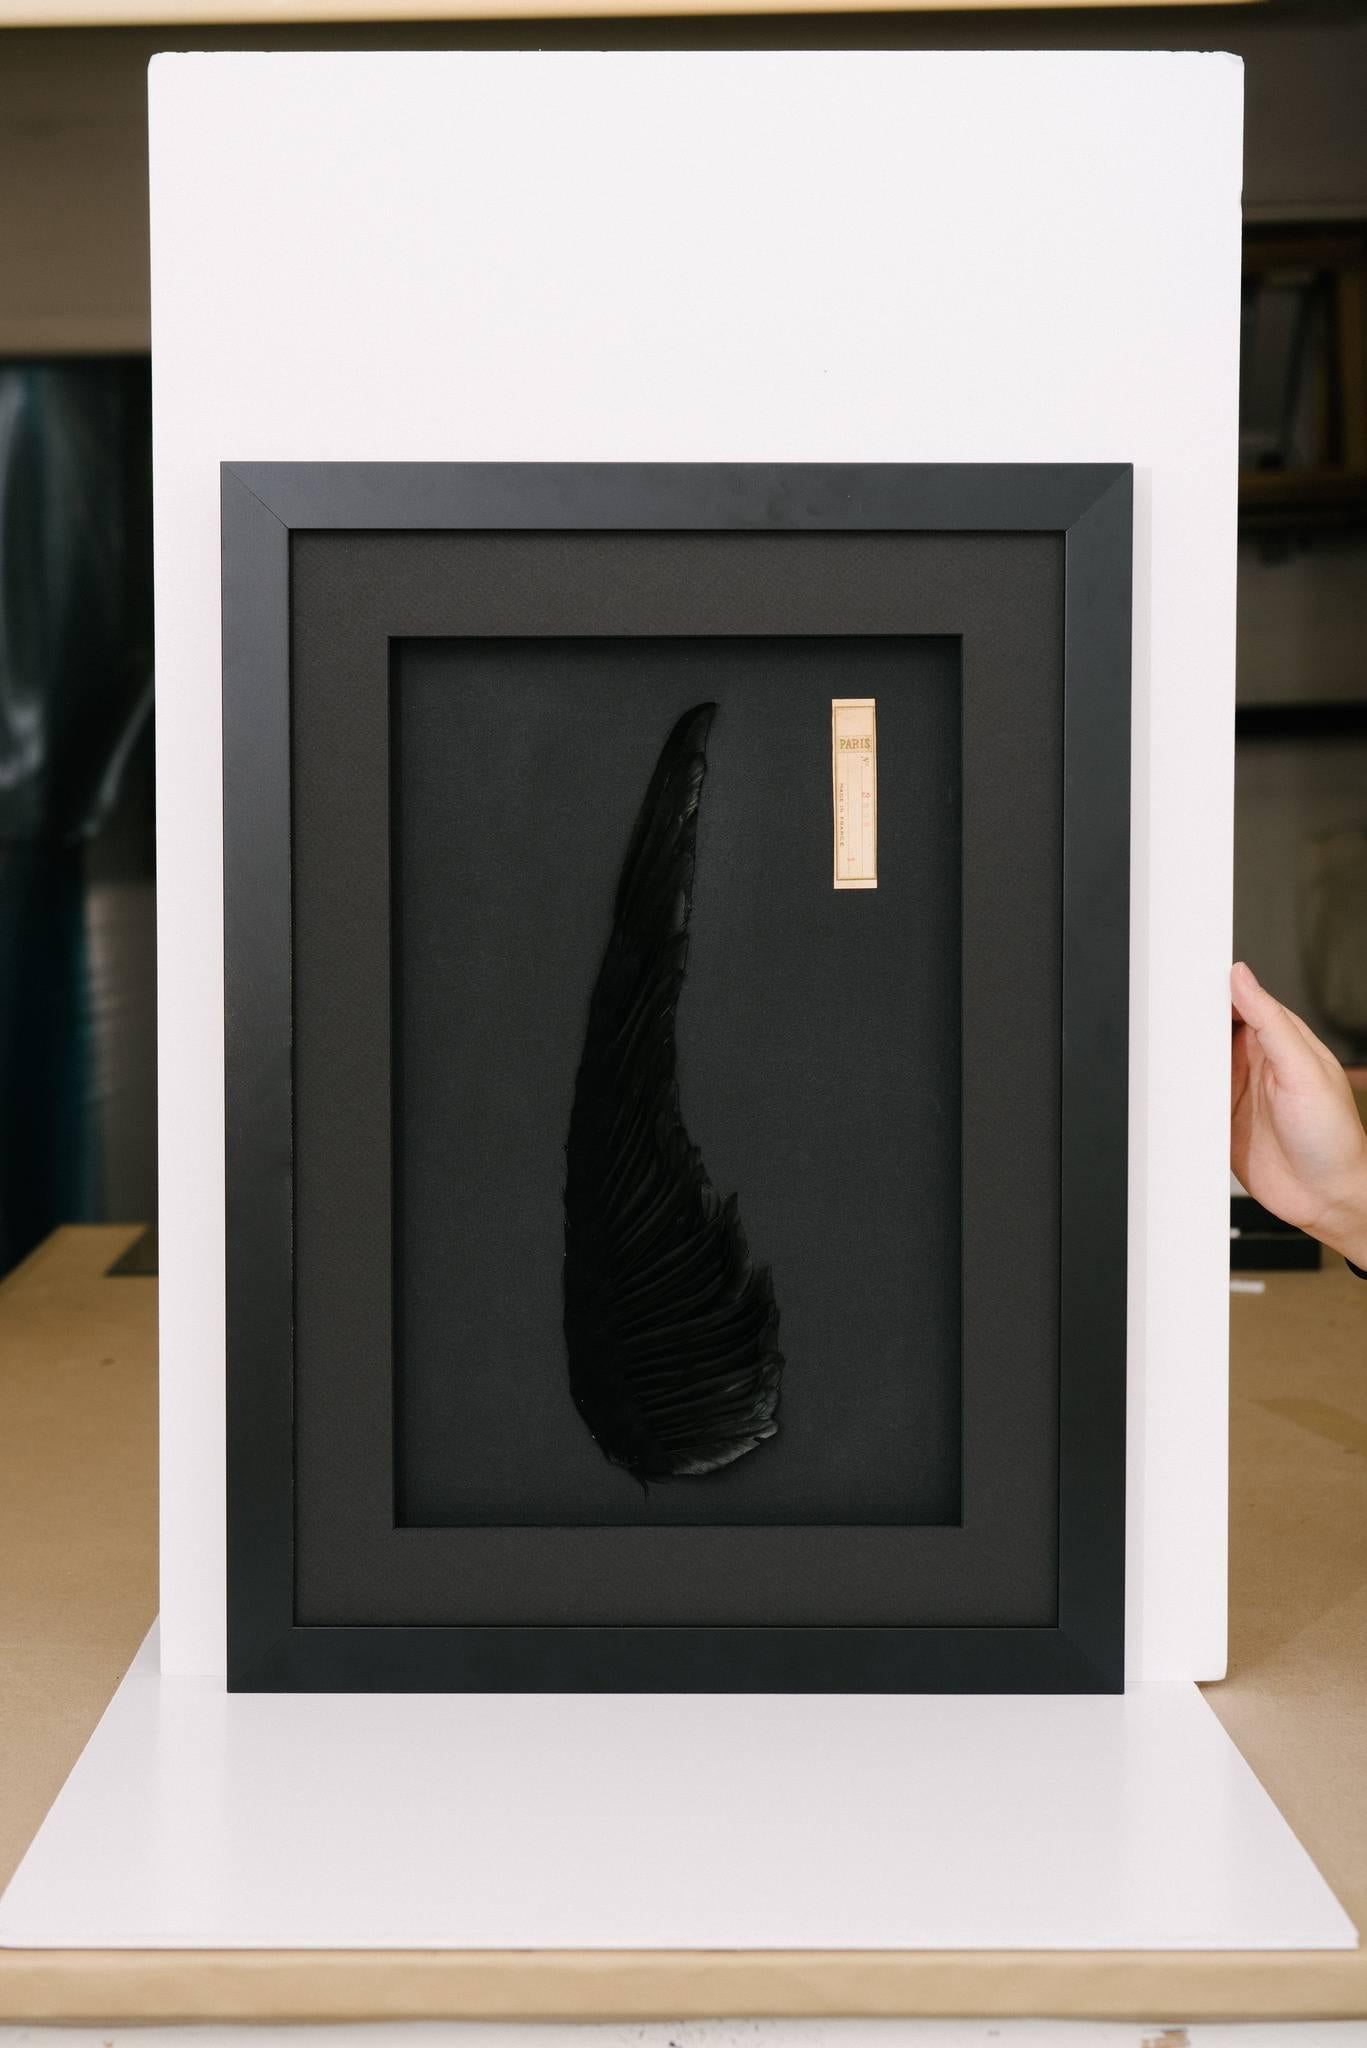 Eine grafische Pariser antike schwarze Hutmacherei Aigrette professionell gerahmt. Diese wunderbaren Kunstwerke werden ausschließlich von Leah Chalfen von LAFF hergestellt. Fotos 1, 2 und 3 sind echte Darstellung dieser tiefschwarzen antiken Federn